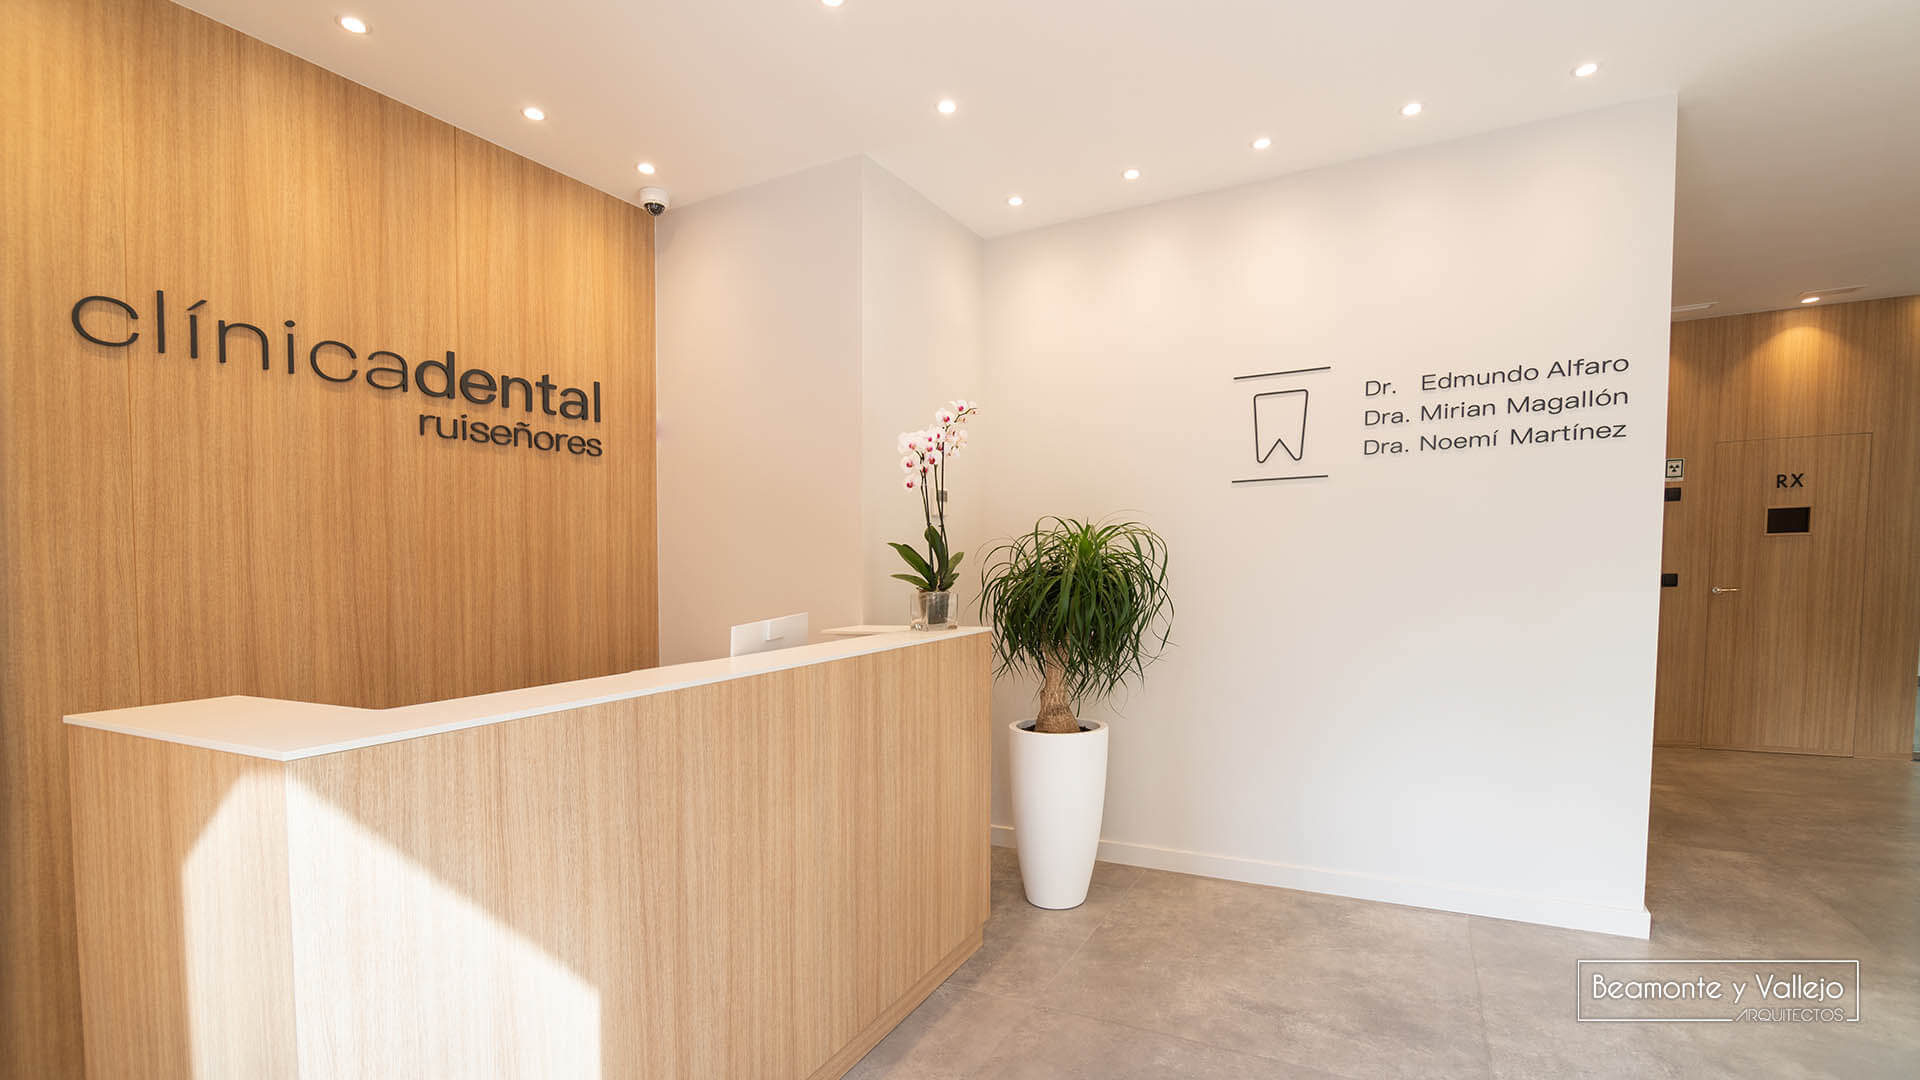 Beamonte y Vallejo arquitectos - Clínica Dental Ruiseñores 10